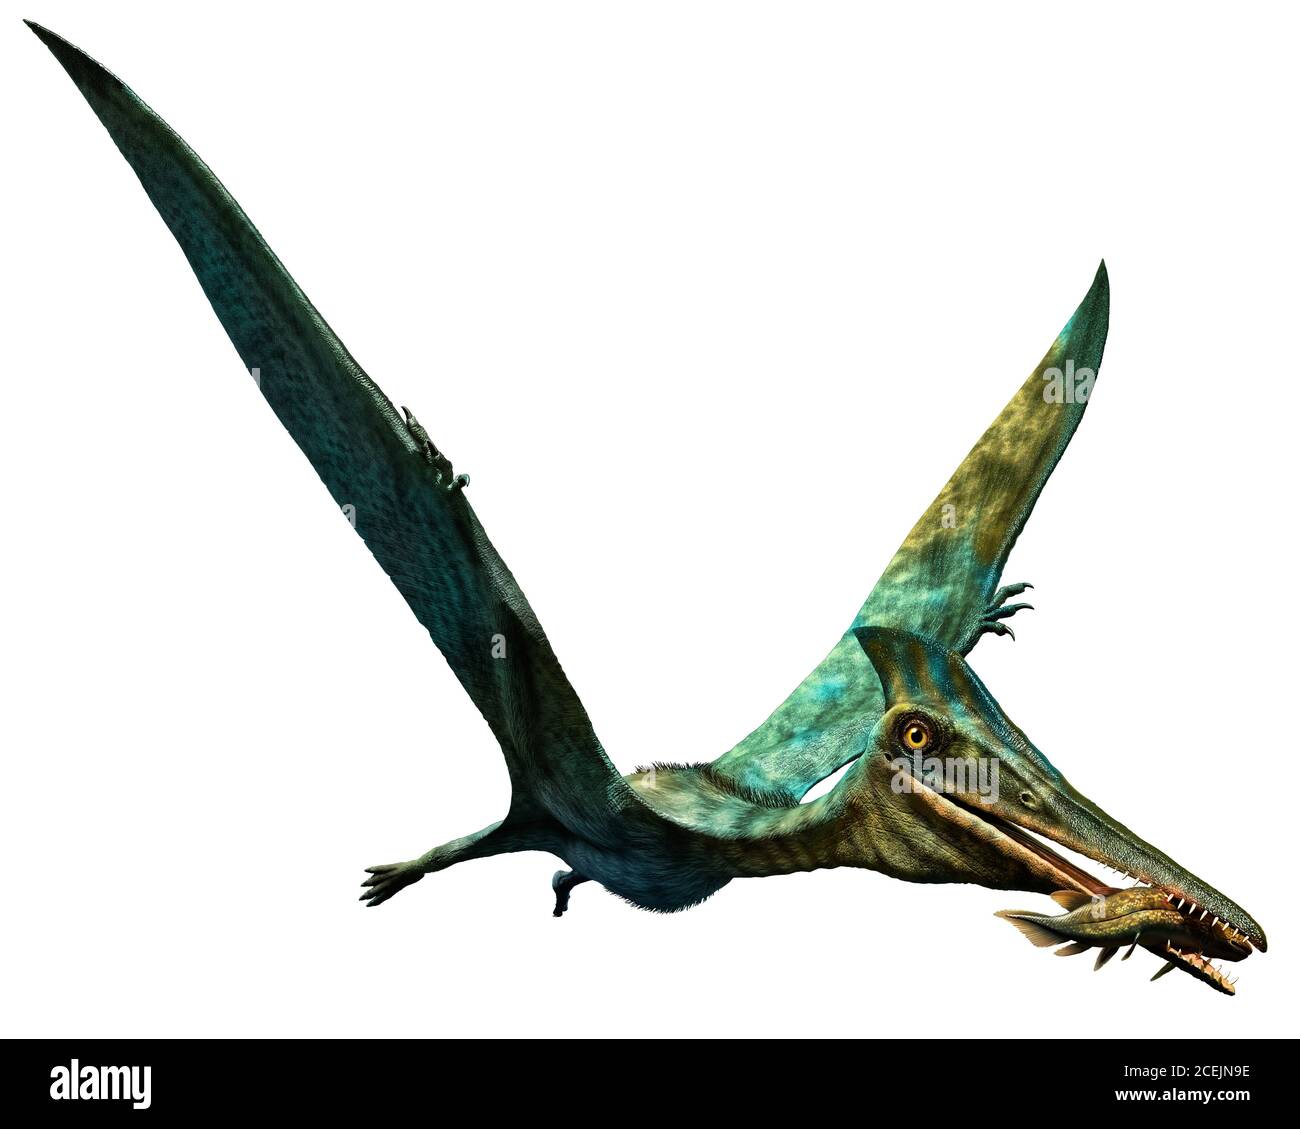 Pterodactylus prehistoric dinosaur 3D illustration Stock Photo